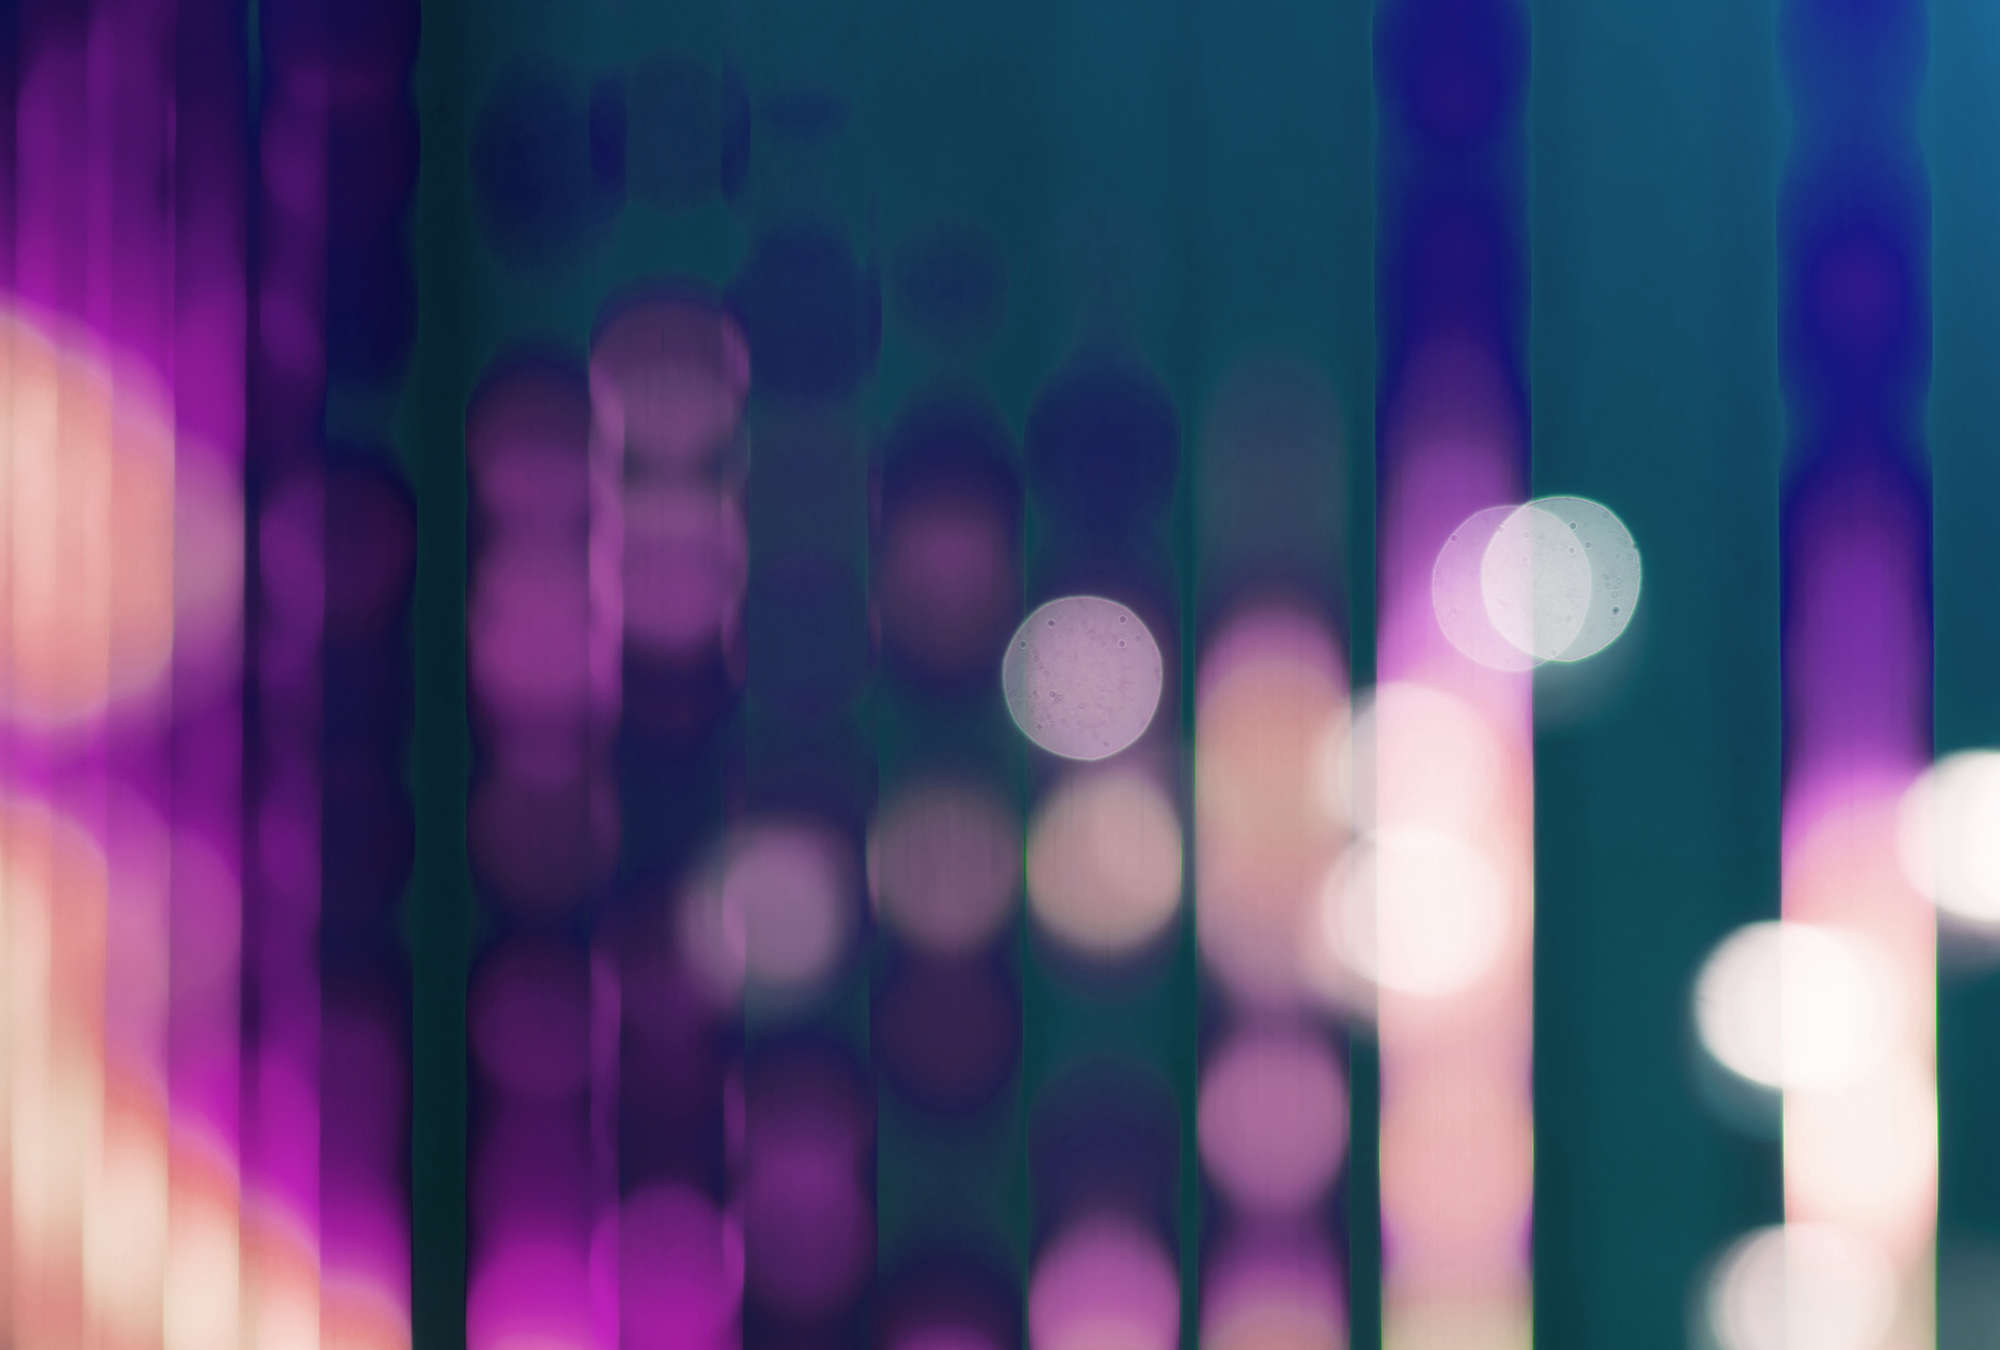             Big City Lights 3 - Papel pintado fotográfico con reflejos de luz en violeta - Azul, Violeta | Estructura No Tejido
        